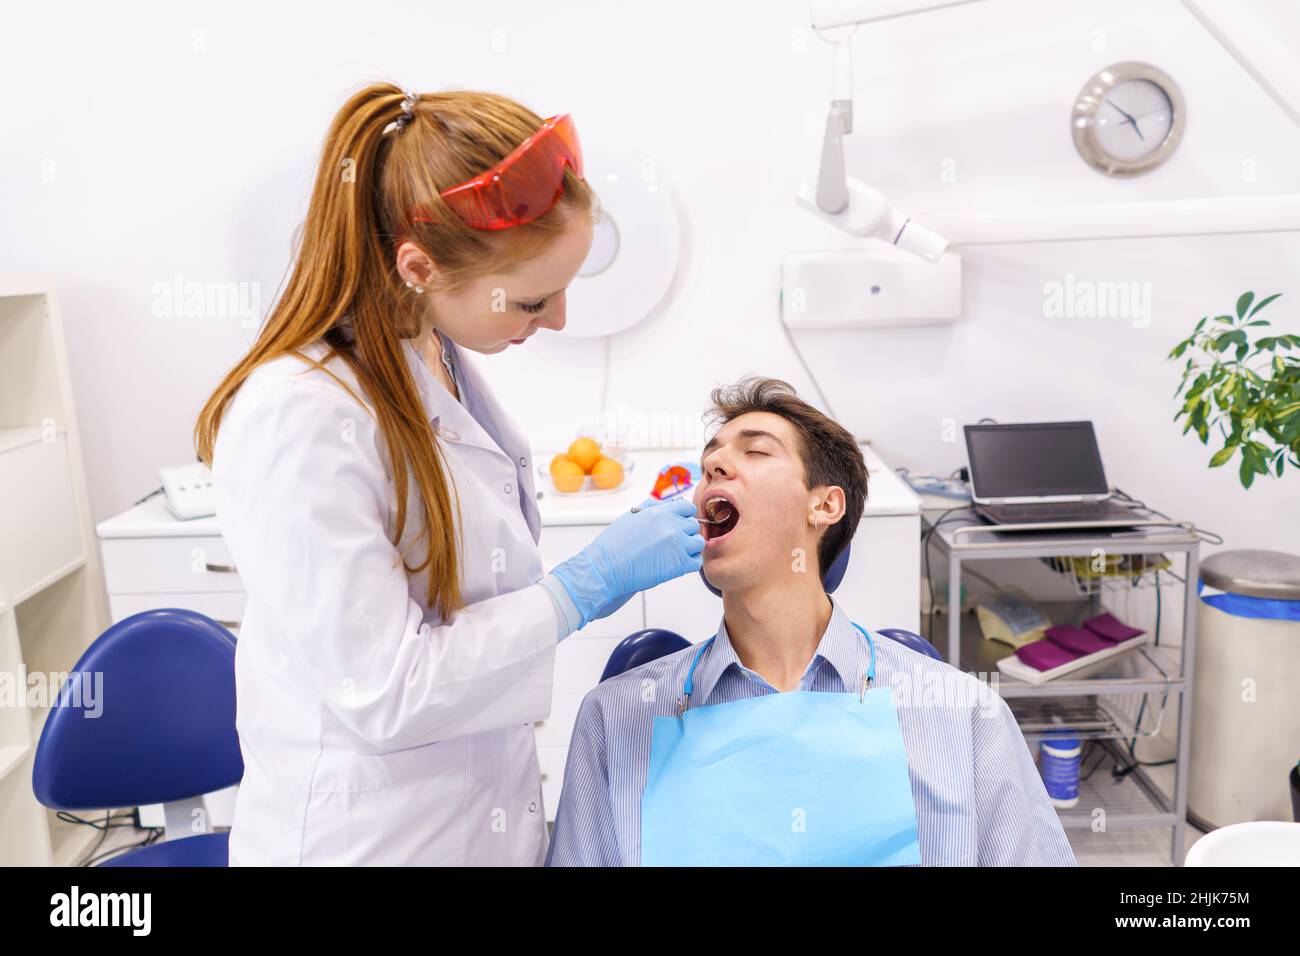 Ingwer Frau in weißem Gewand und Latexhandschuhe mit Spiegel, um die Zähne des Mannes zu untersuchen, während sie in einem modernen Büro der Zahnklinik arbeitet Stockfoto